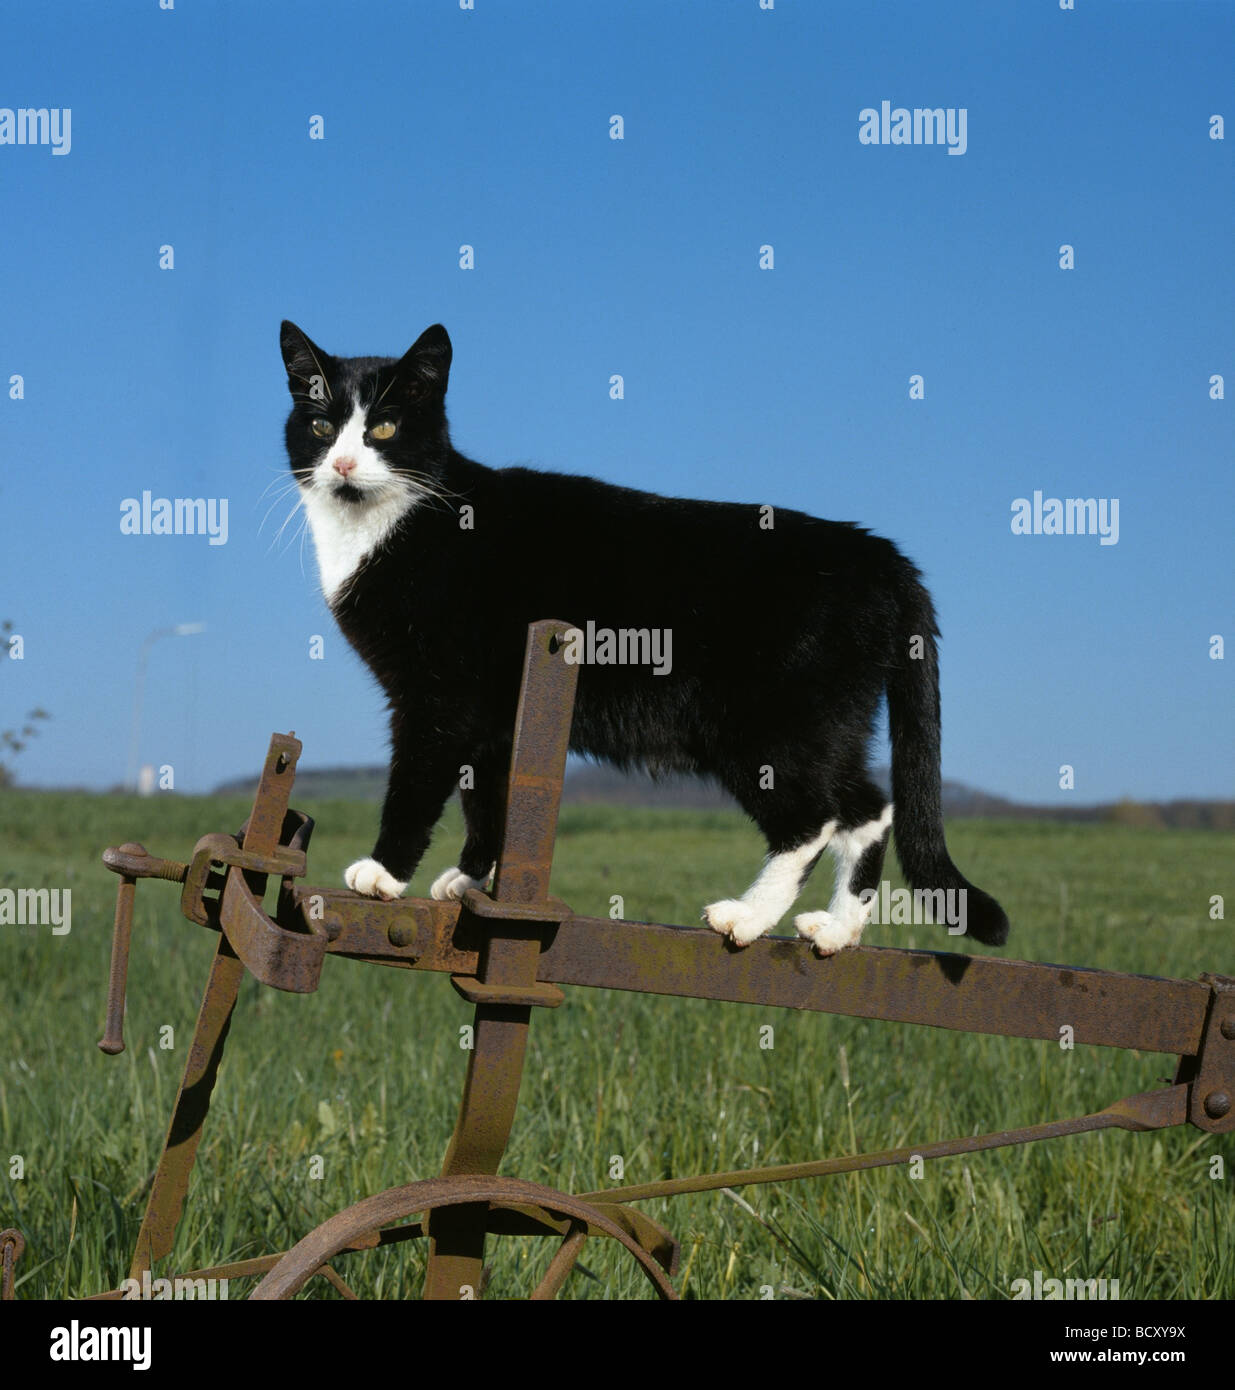 Chat domestique Adulte noir et blanc debout sur une machine agricole Banque D'Images